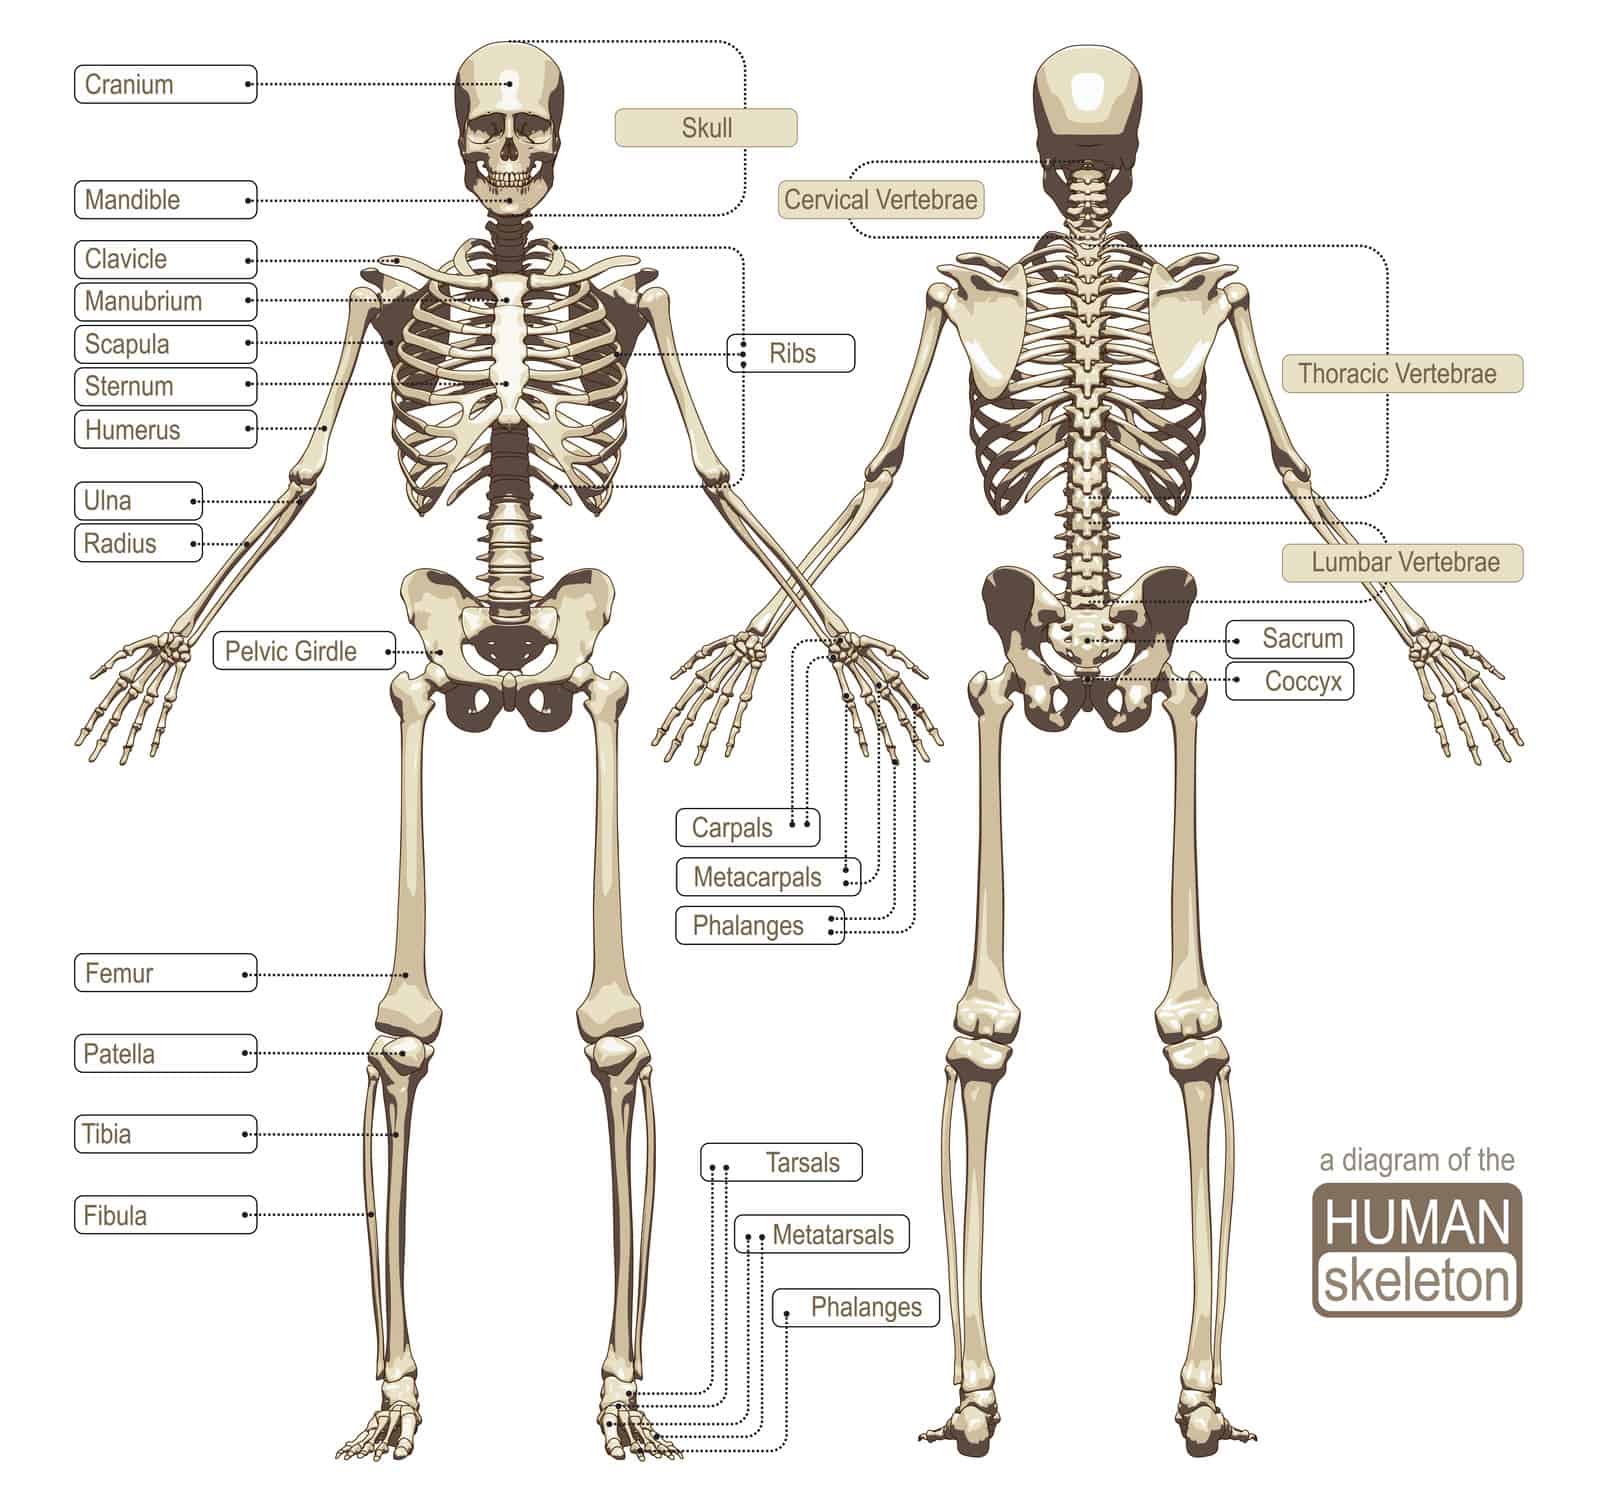 The skeletal system.